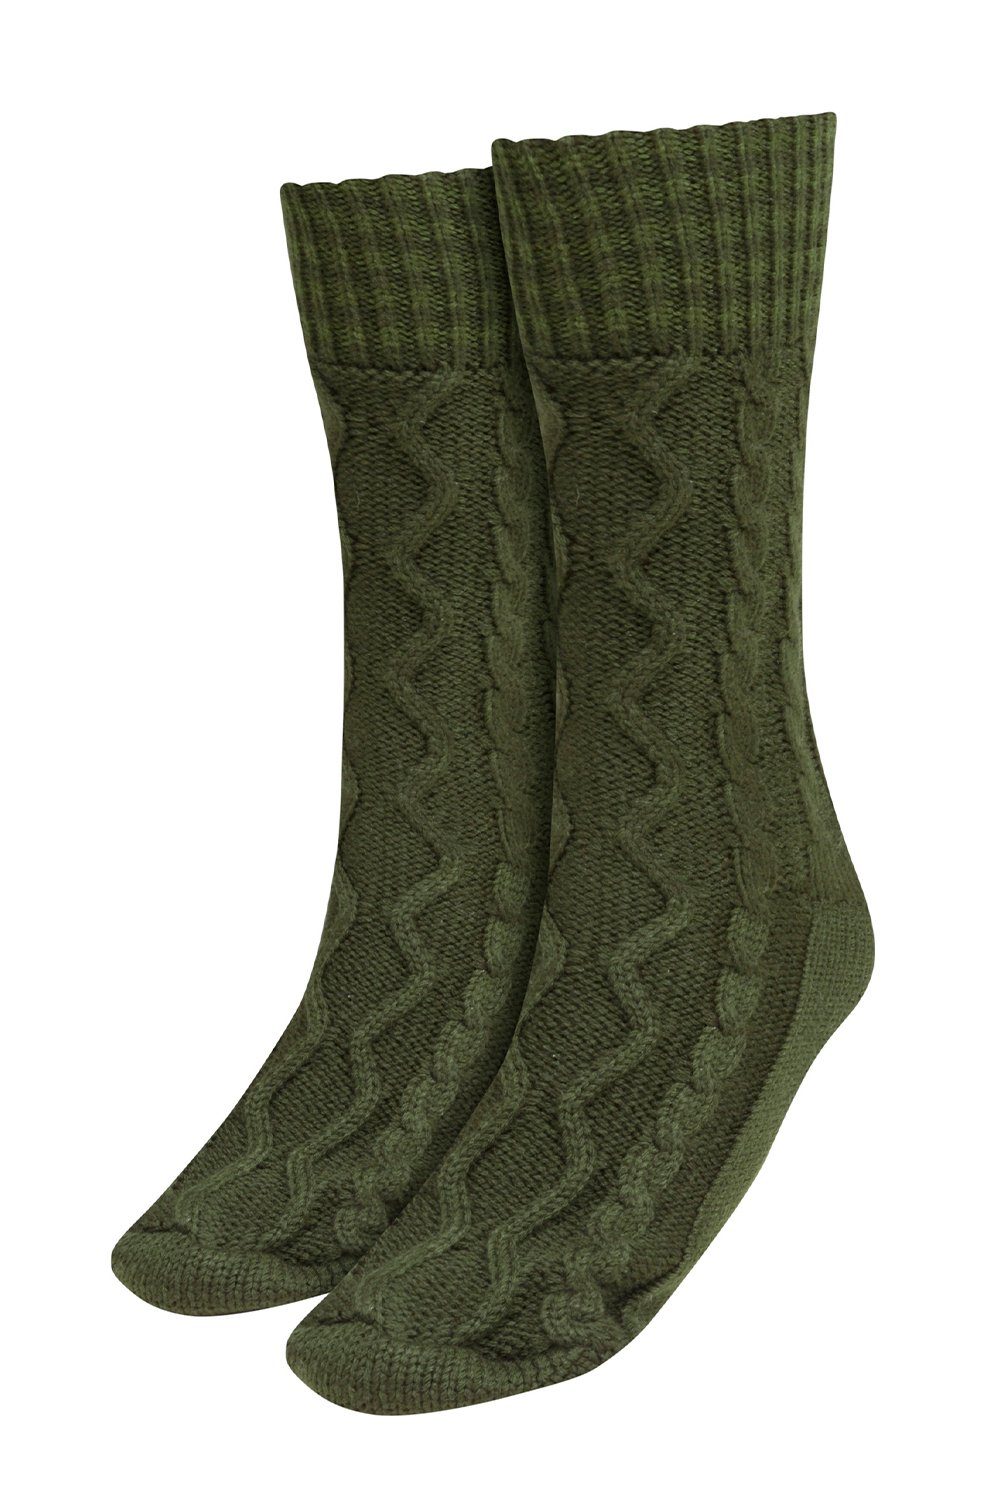 PiP Studio Socken Annika Long Socks 51519005-008 dark green | Socken